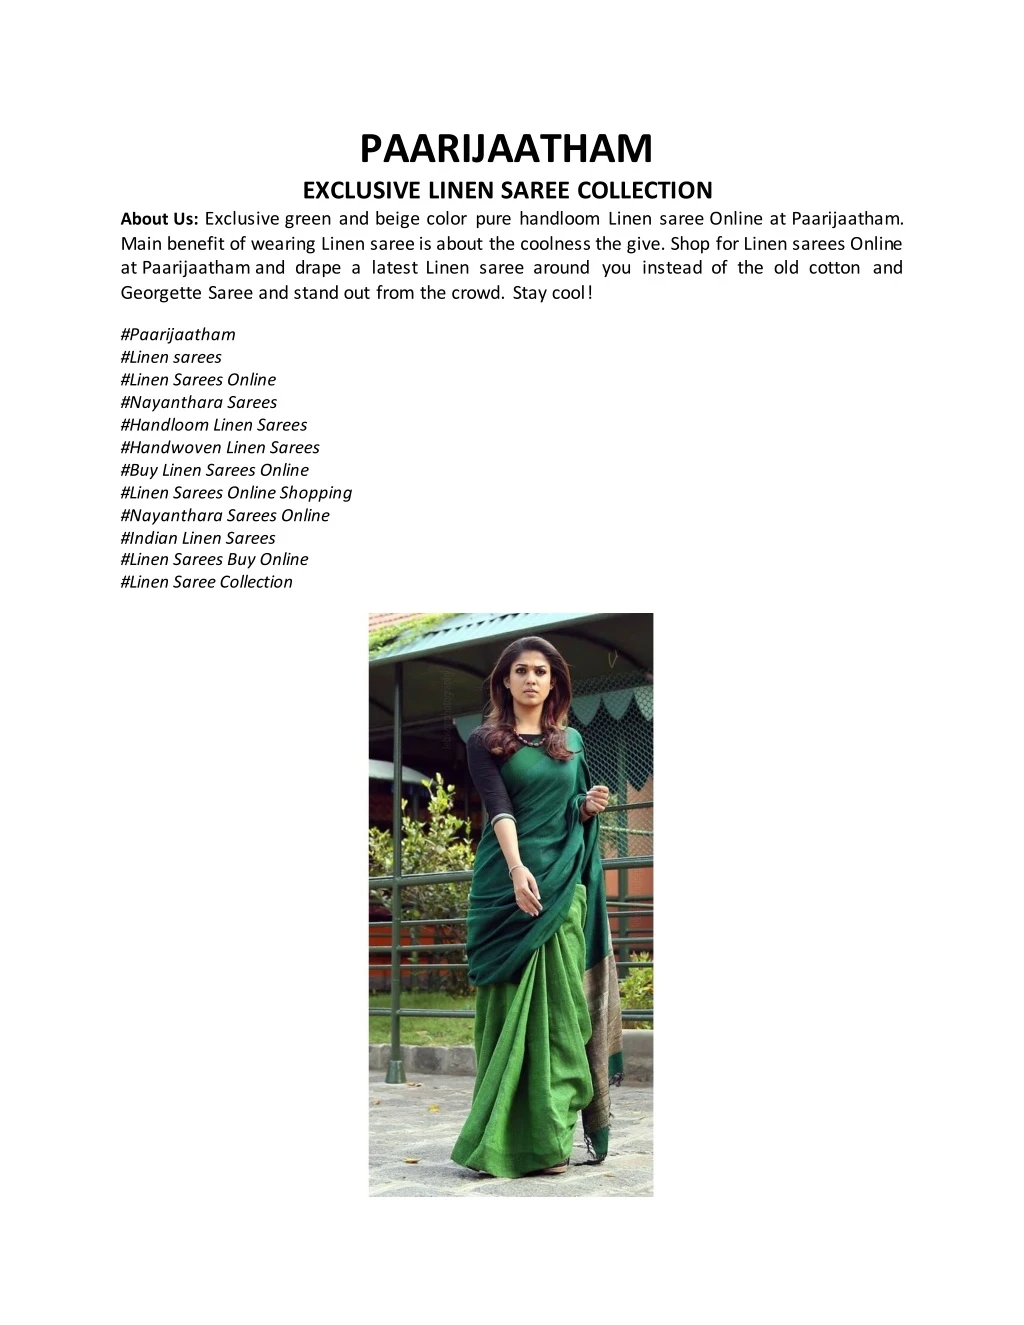 paarijaatham exclusive linen saree collection